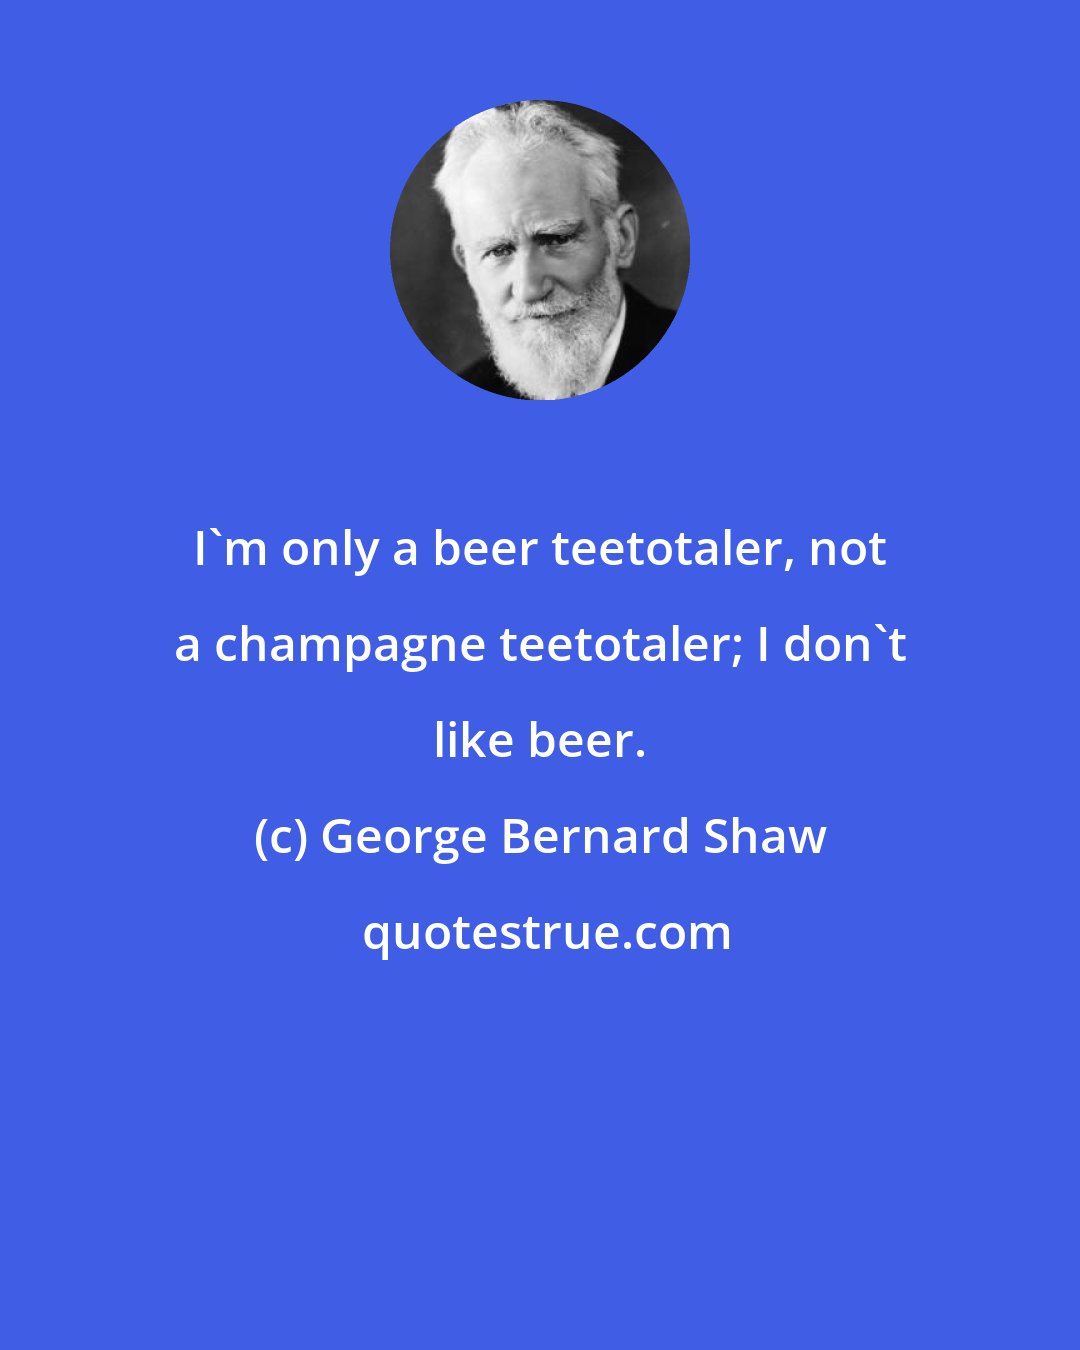 George Bernard Shaw: I'm only a beer teetotaler, not a champagne teetotaler; I don't like beer.